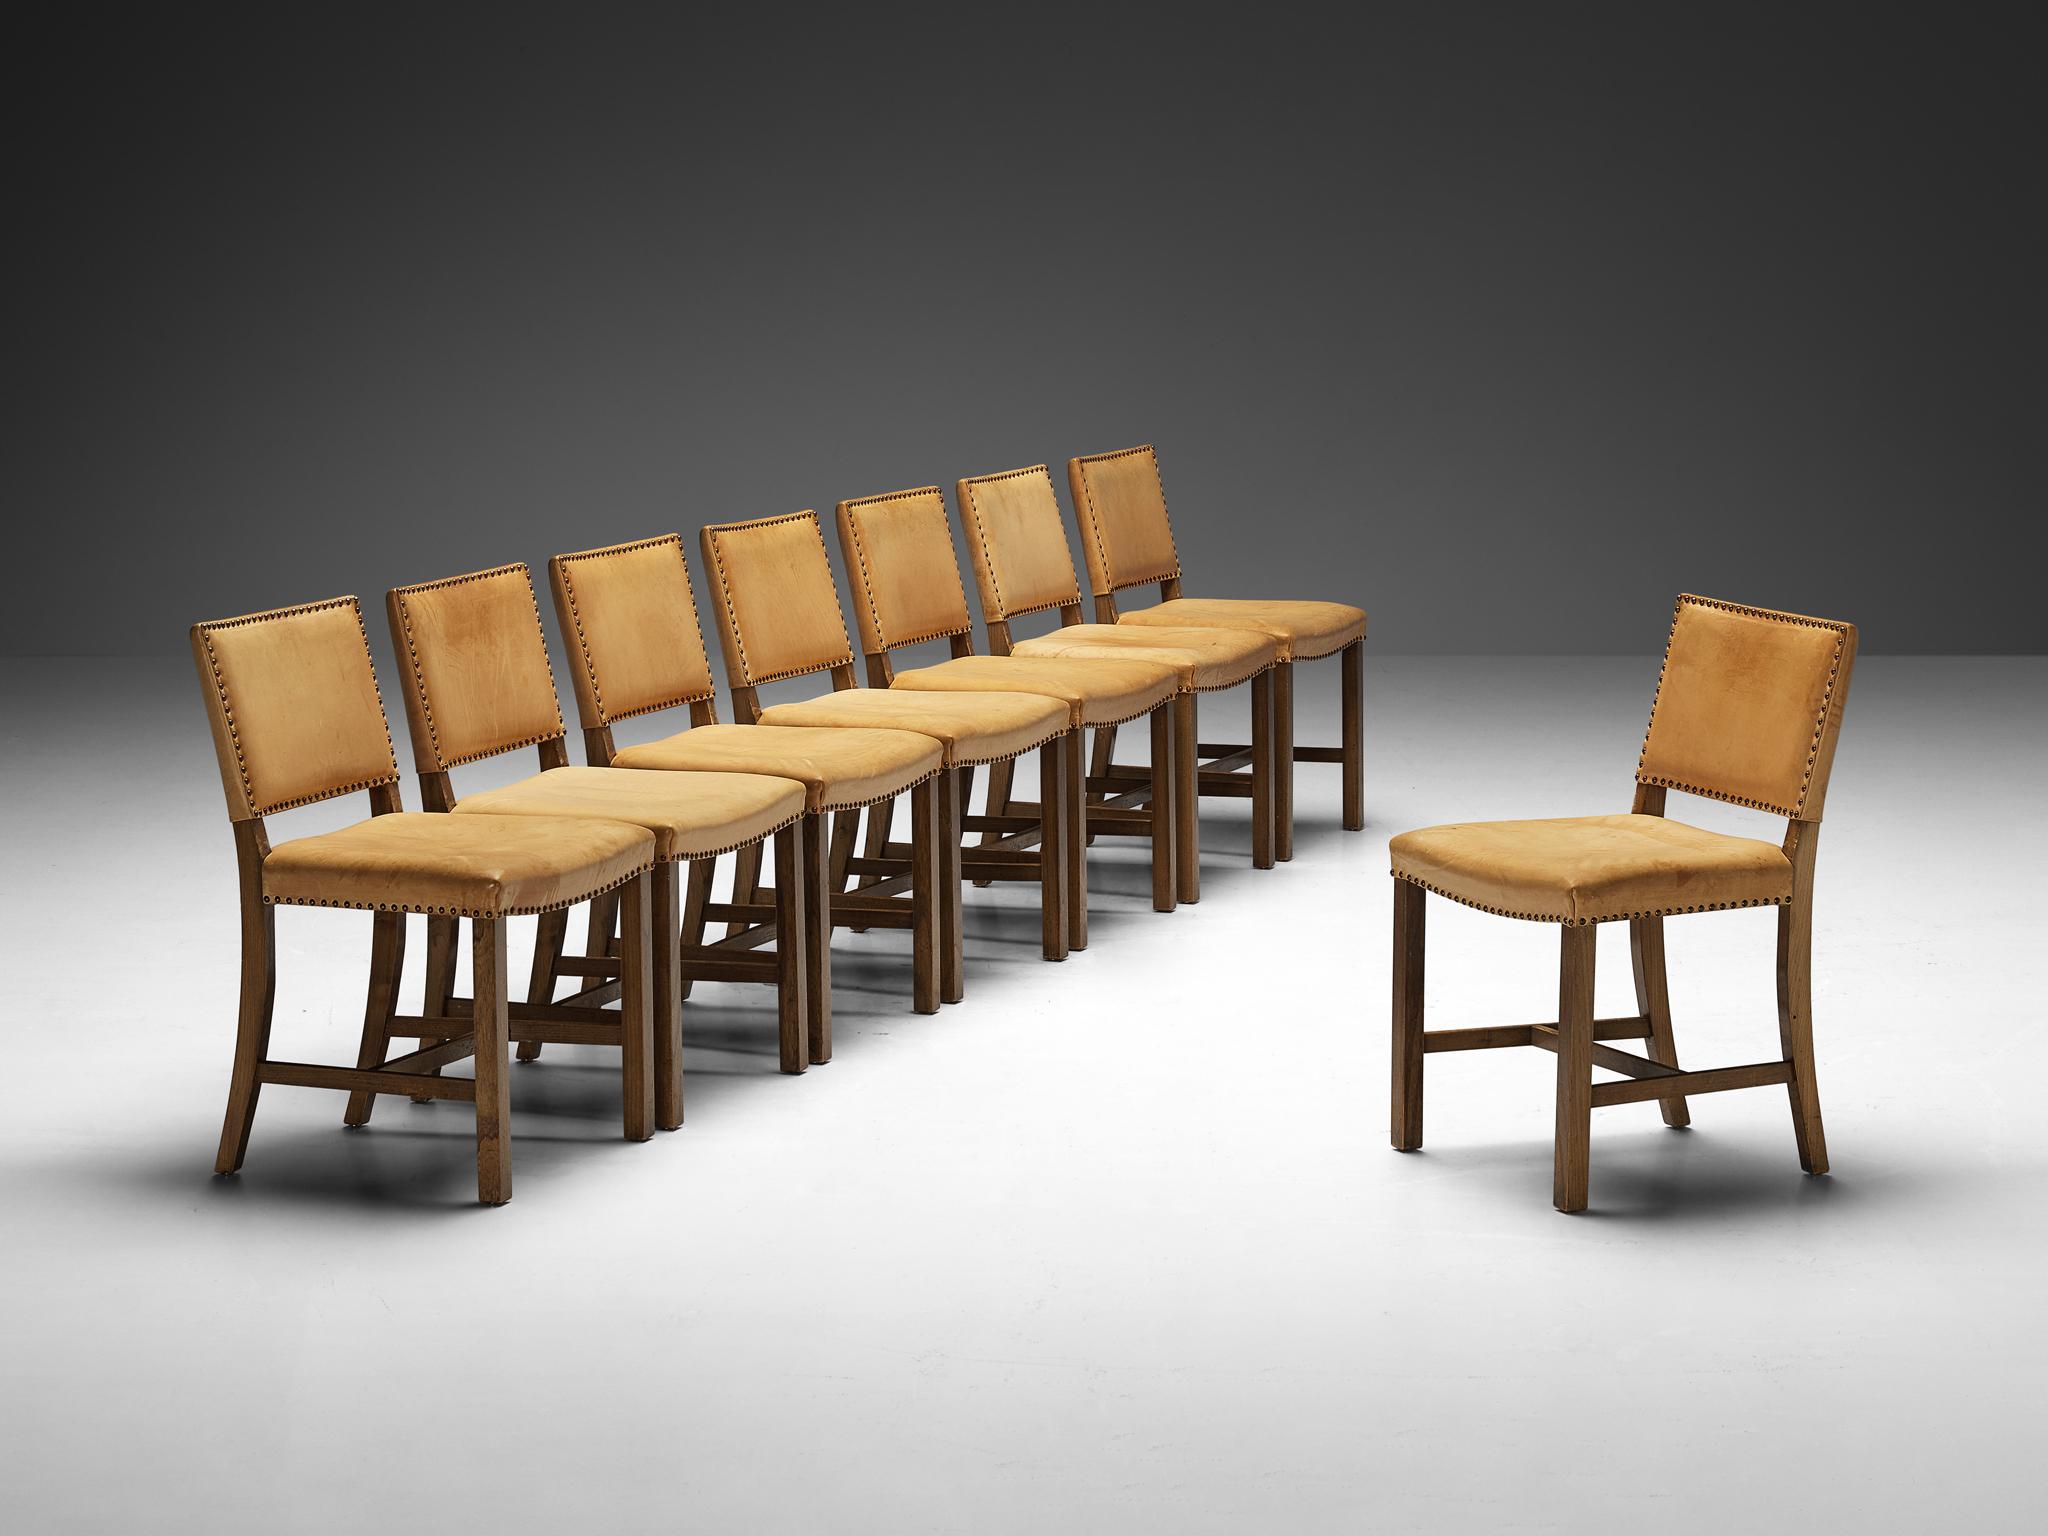 Satz von acht Esszimmerstühlen, Ulme, Leder, Metall, Dänemark, 1950er Jahre

Dieses Set dänischer Esszimmerstühle ist von zeitloser Eleganz und handwerklichem Können geprägt und weist starke Ähnlichkeiten mit dem vornehmen Stil von Kaare Klint auf.